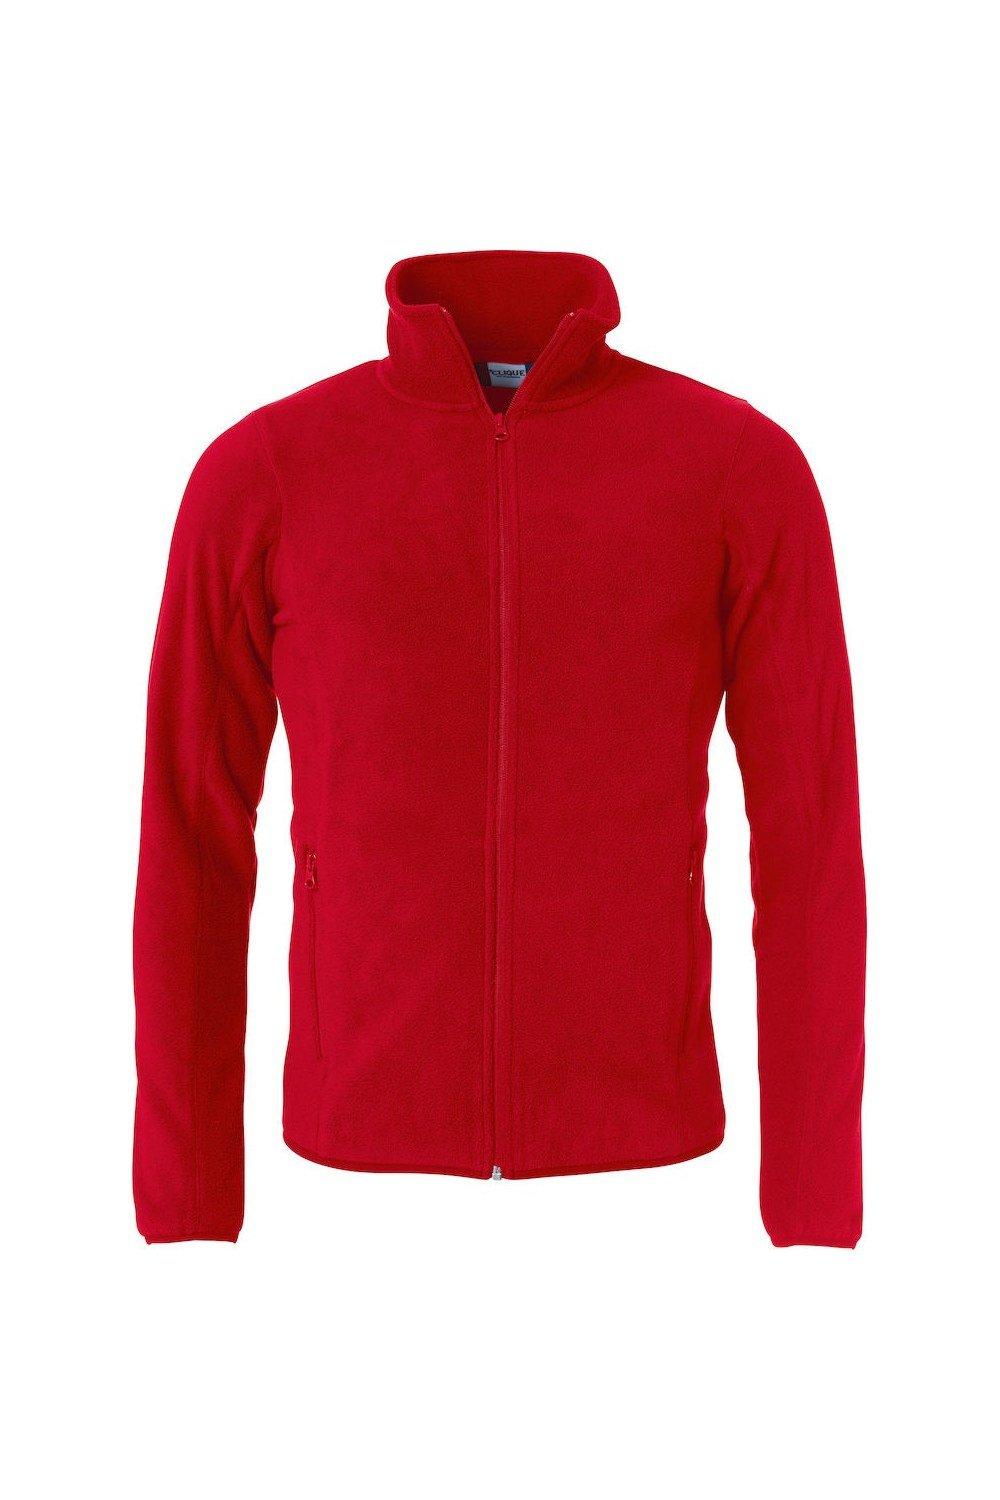 Базовая флисовая куртка Clique, красный